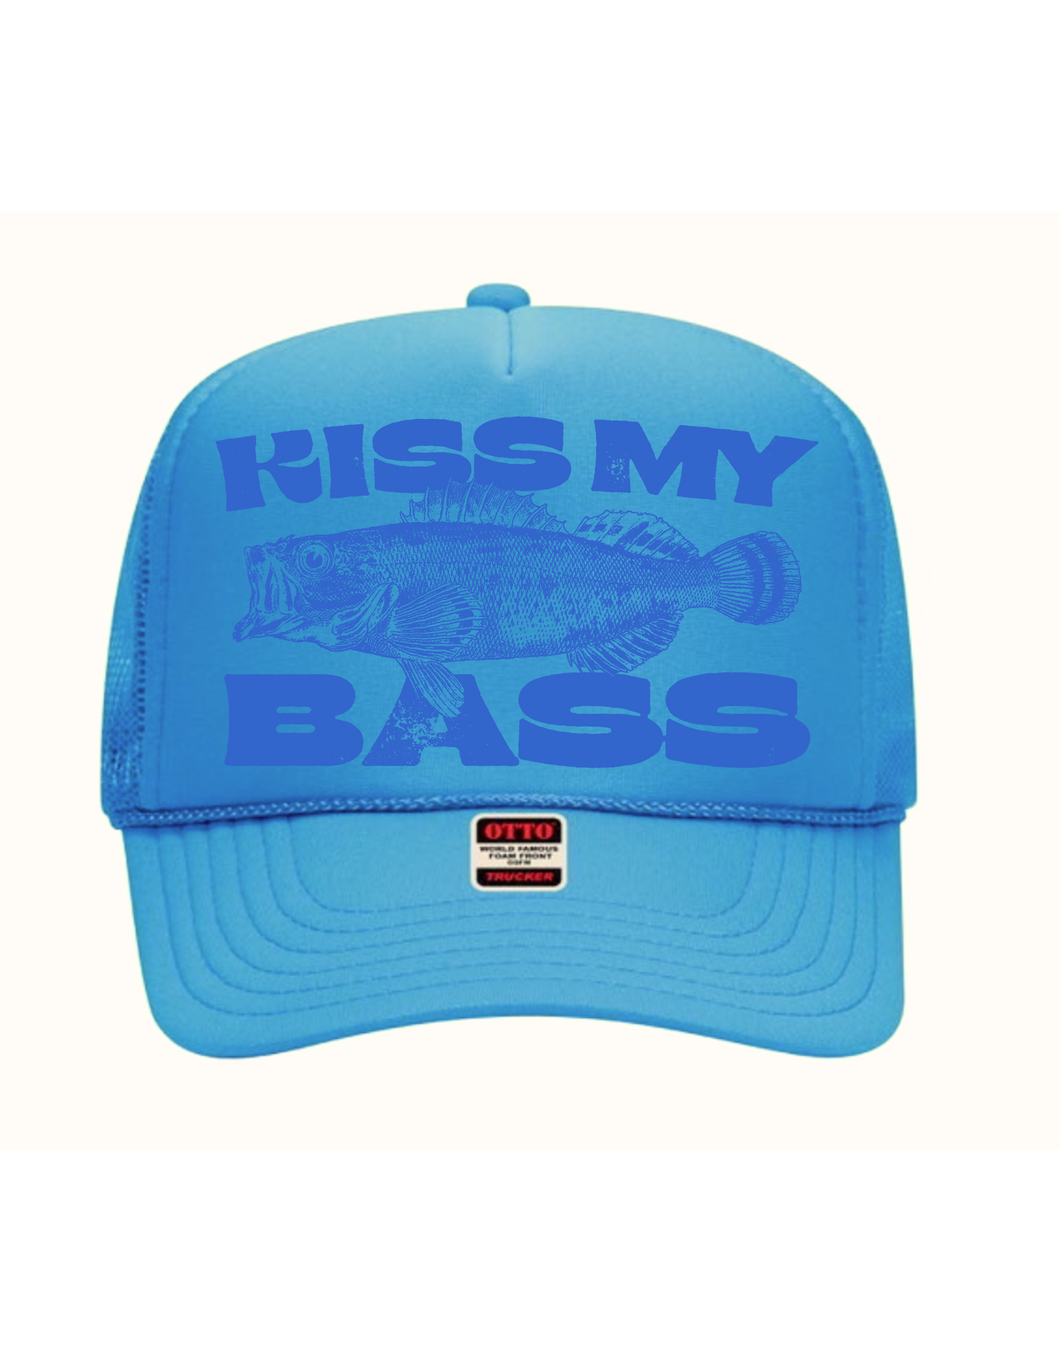 Kiss my Bass - Trucker Hat